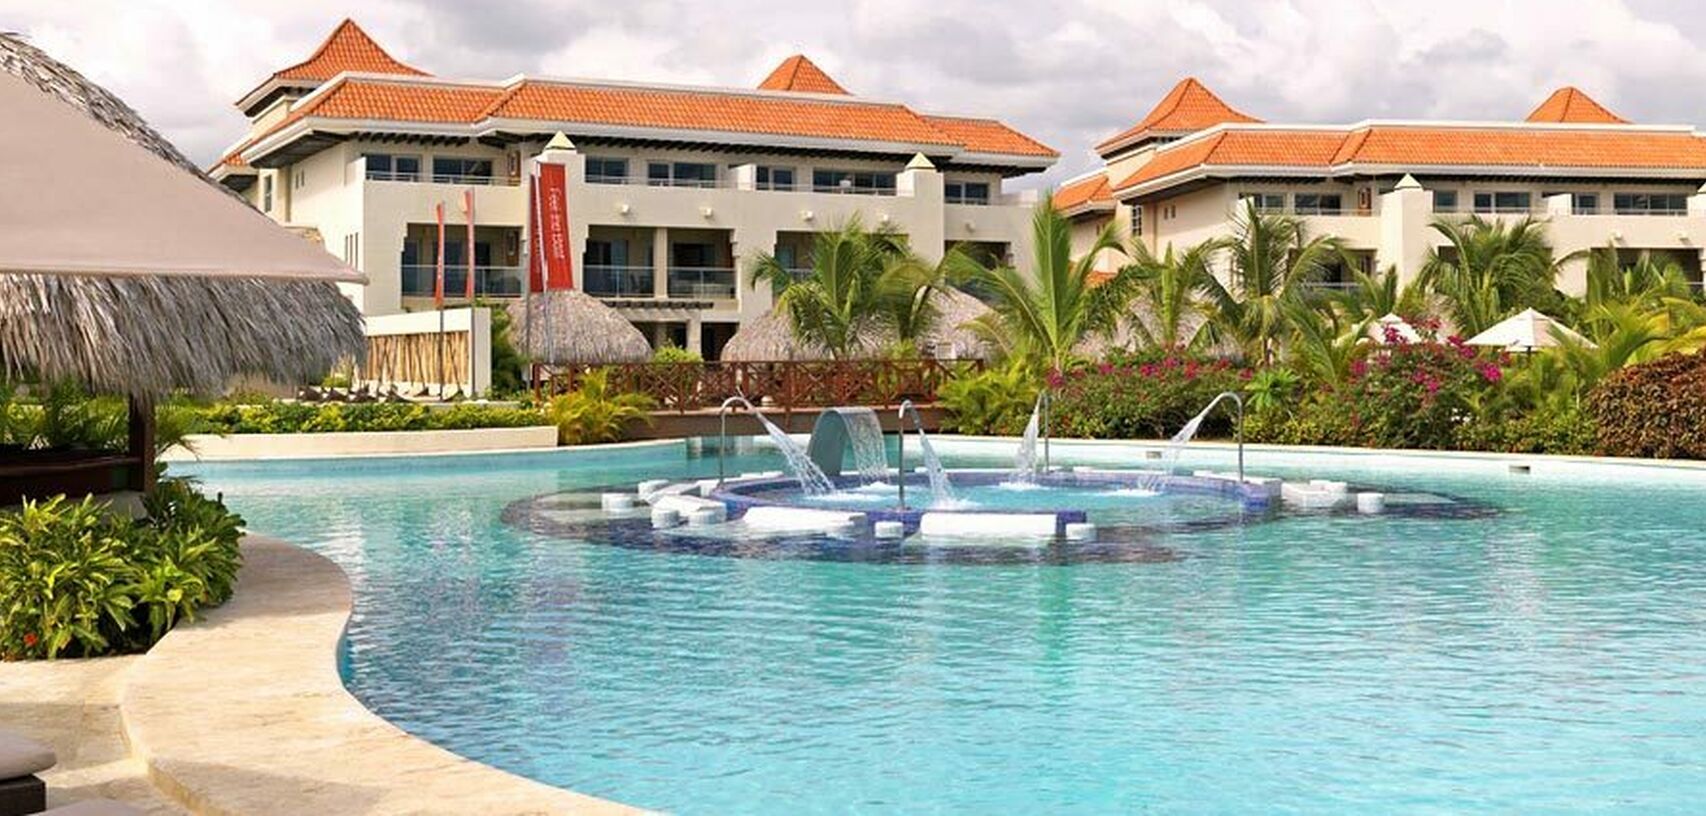 Punta Cana supera la estadía promedio de Cancún y Riviera Maya